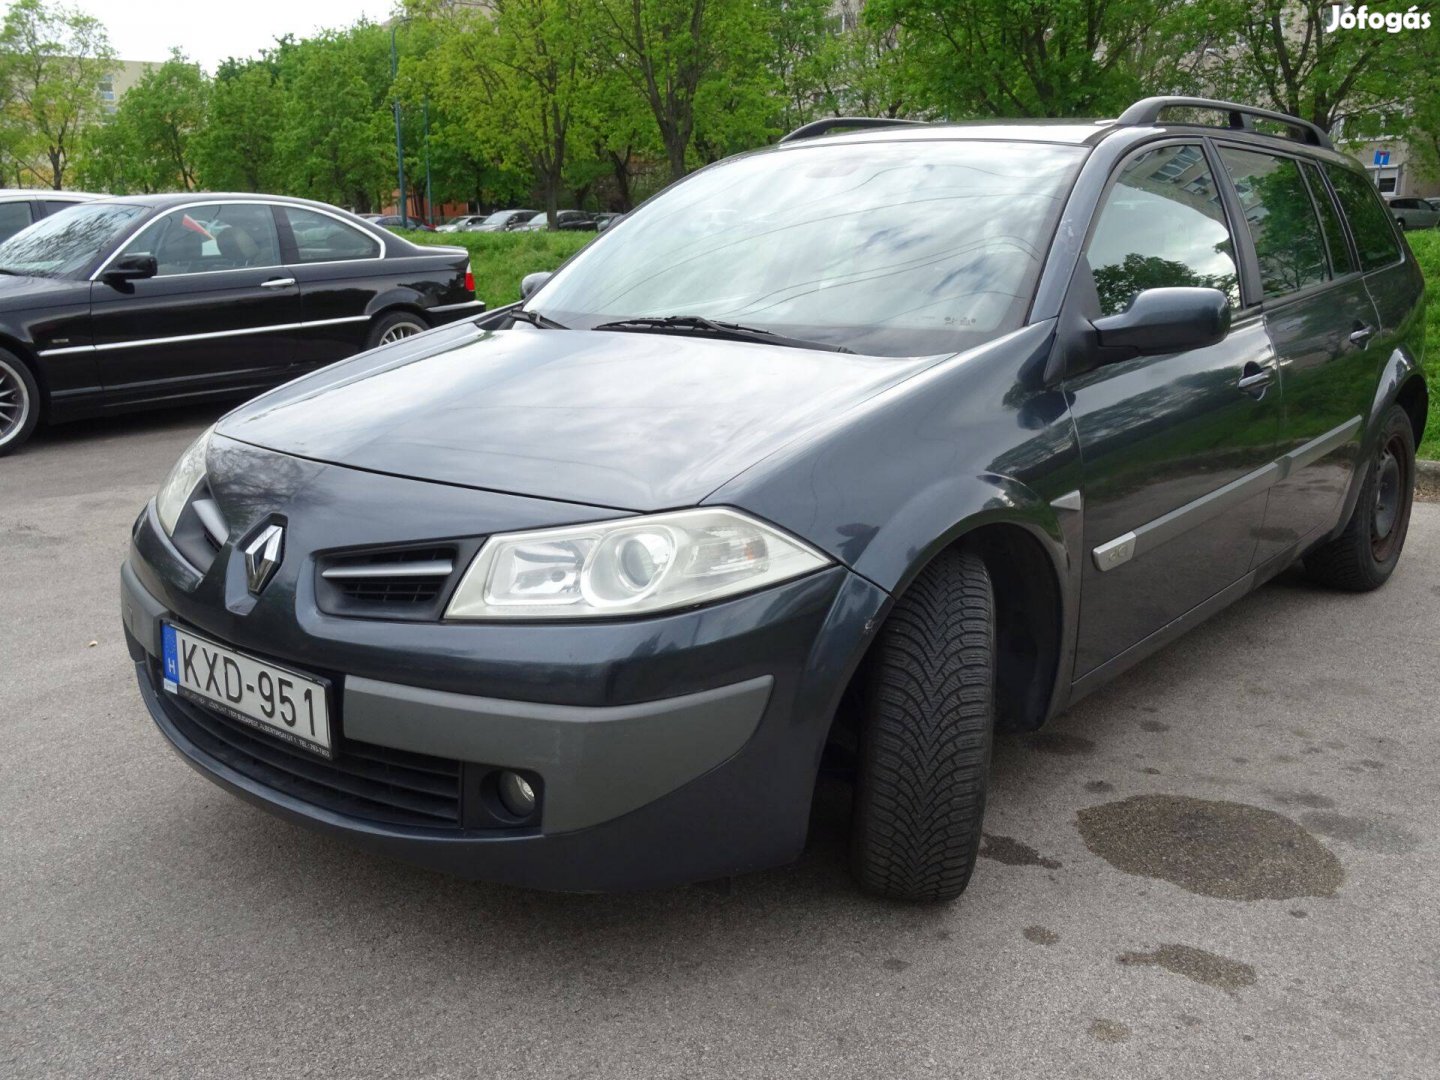 Gazdaságos, Renault kombi családi autó extrákkal eladó